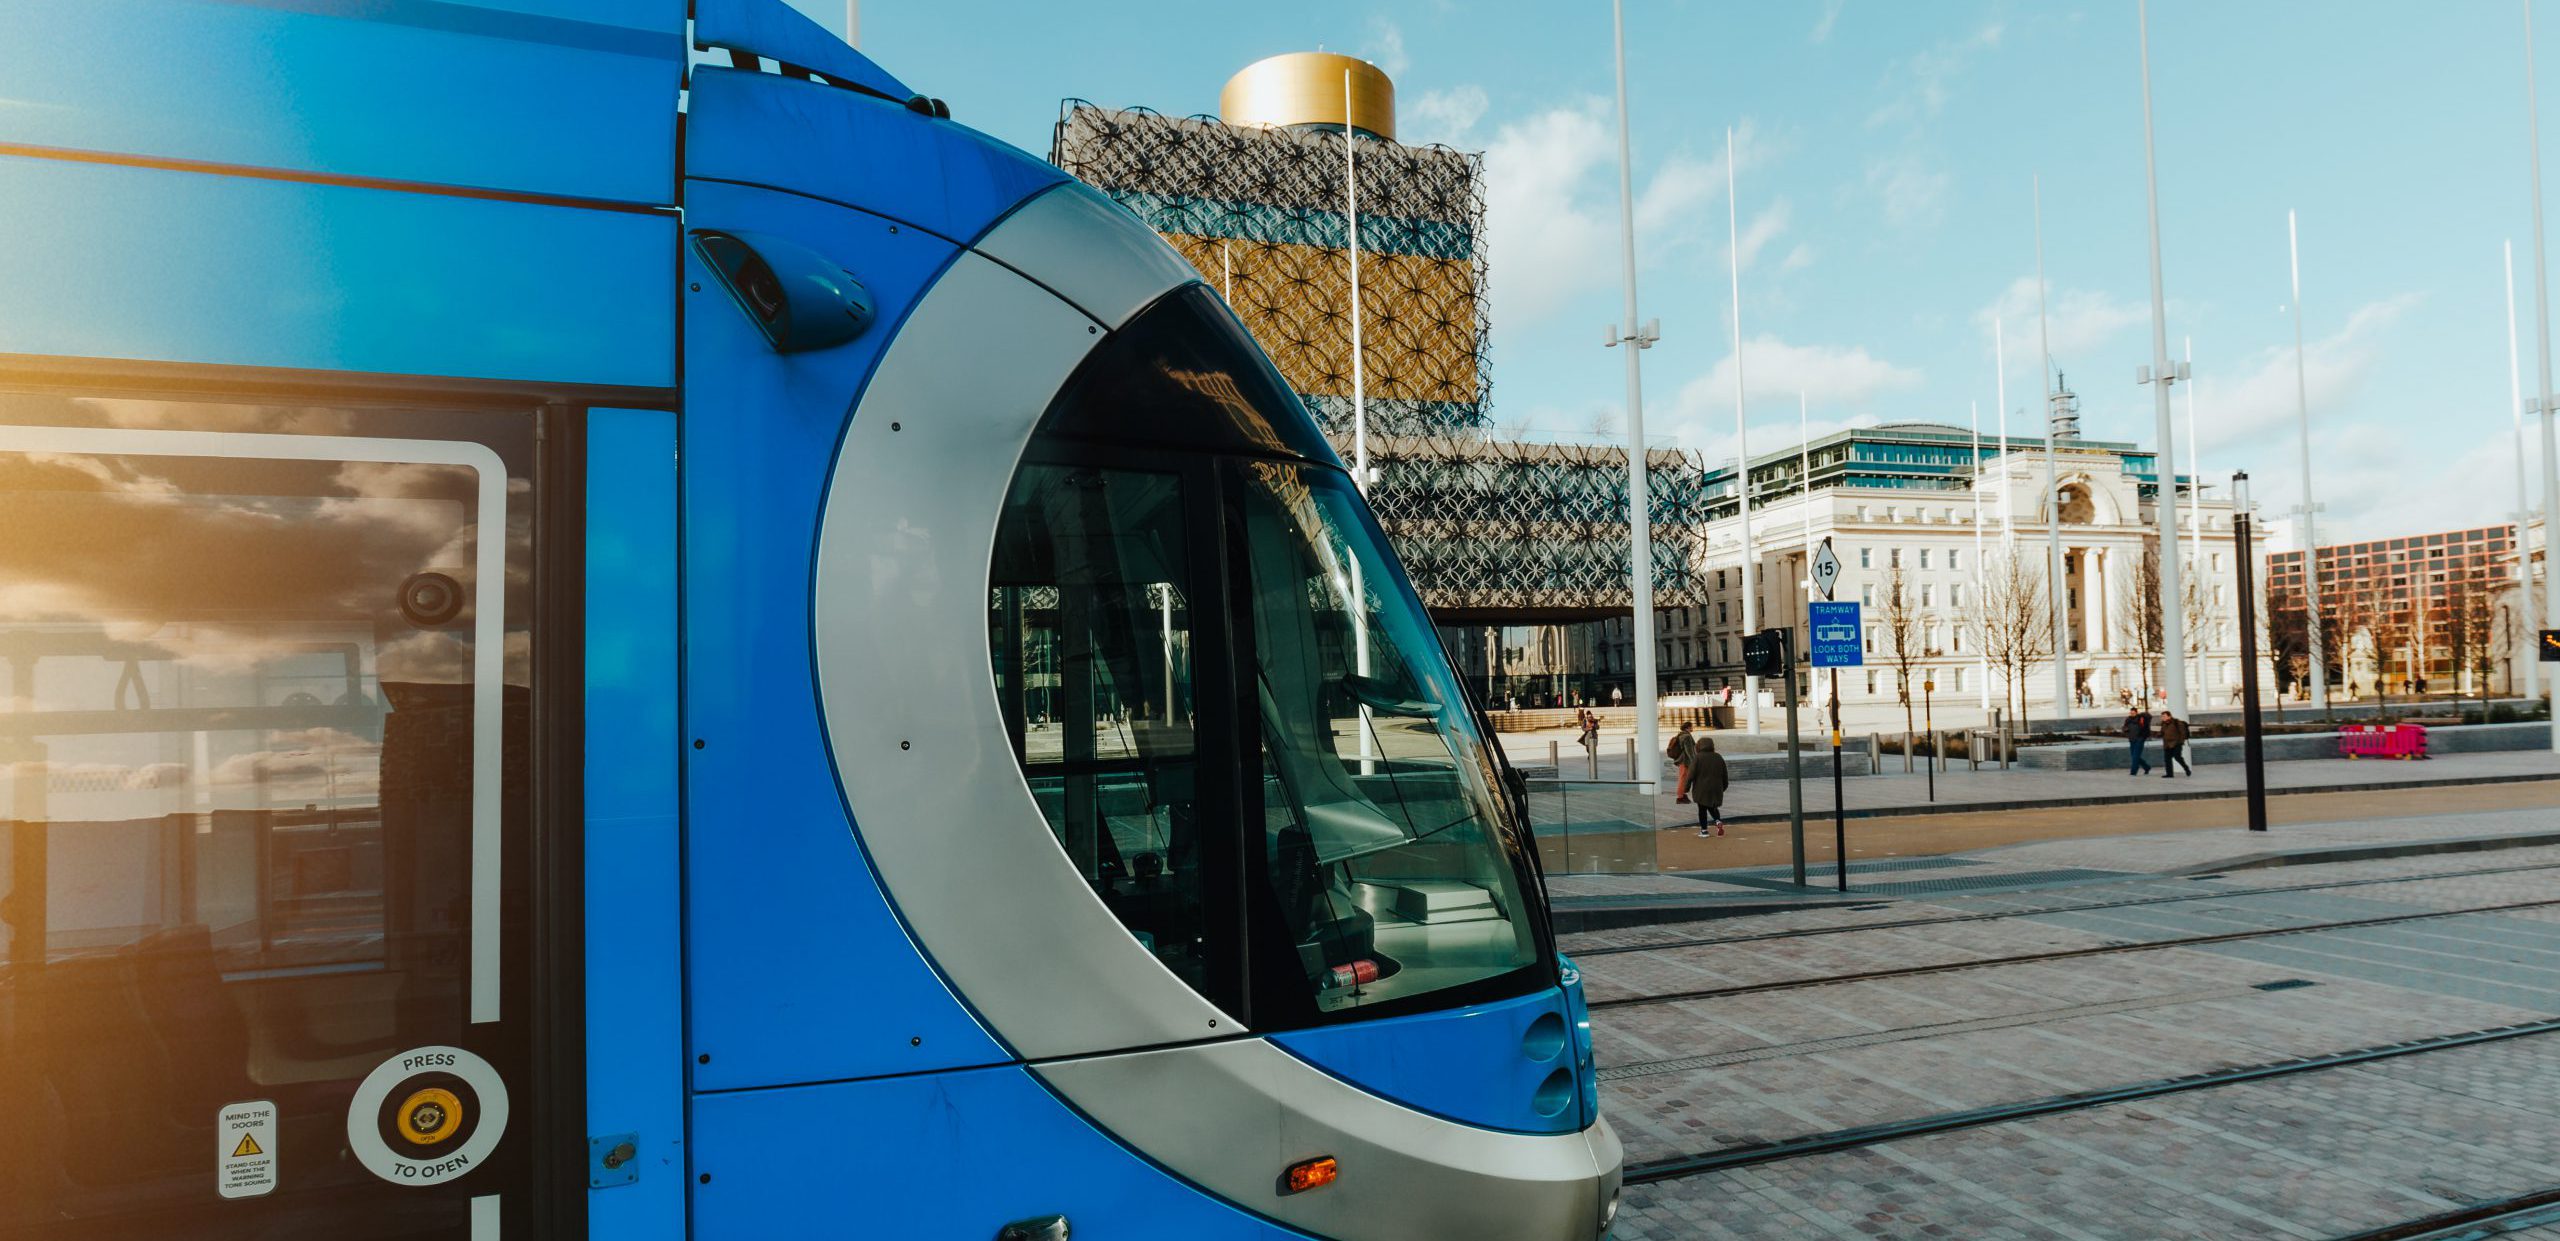 Side view of tram in Birmingham